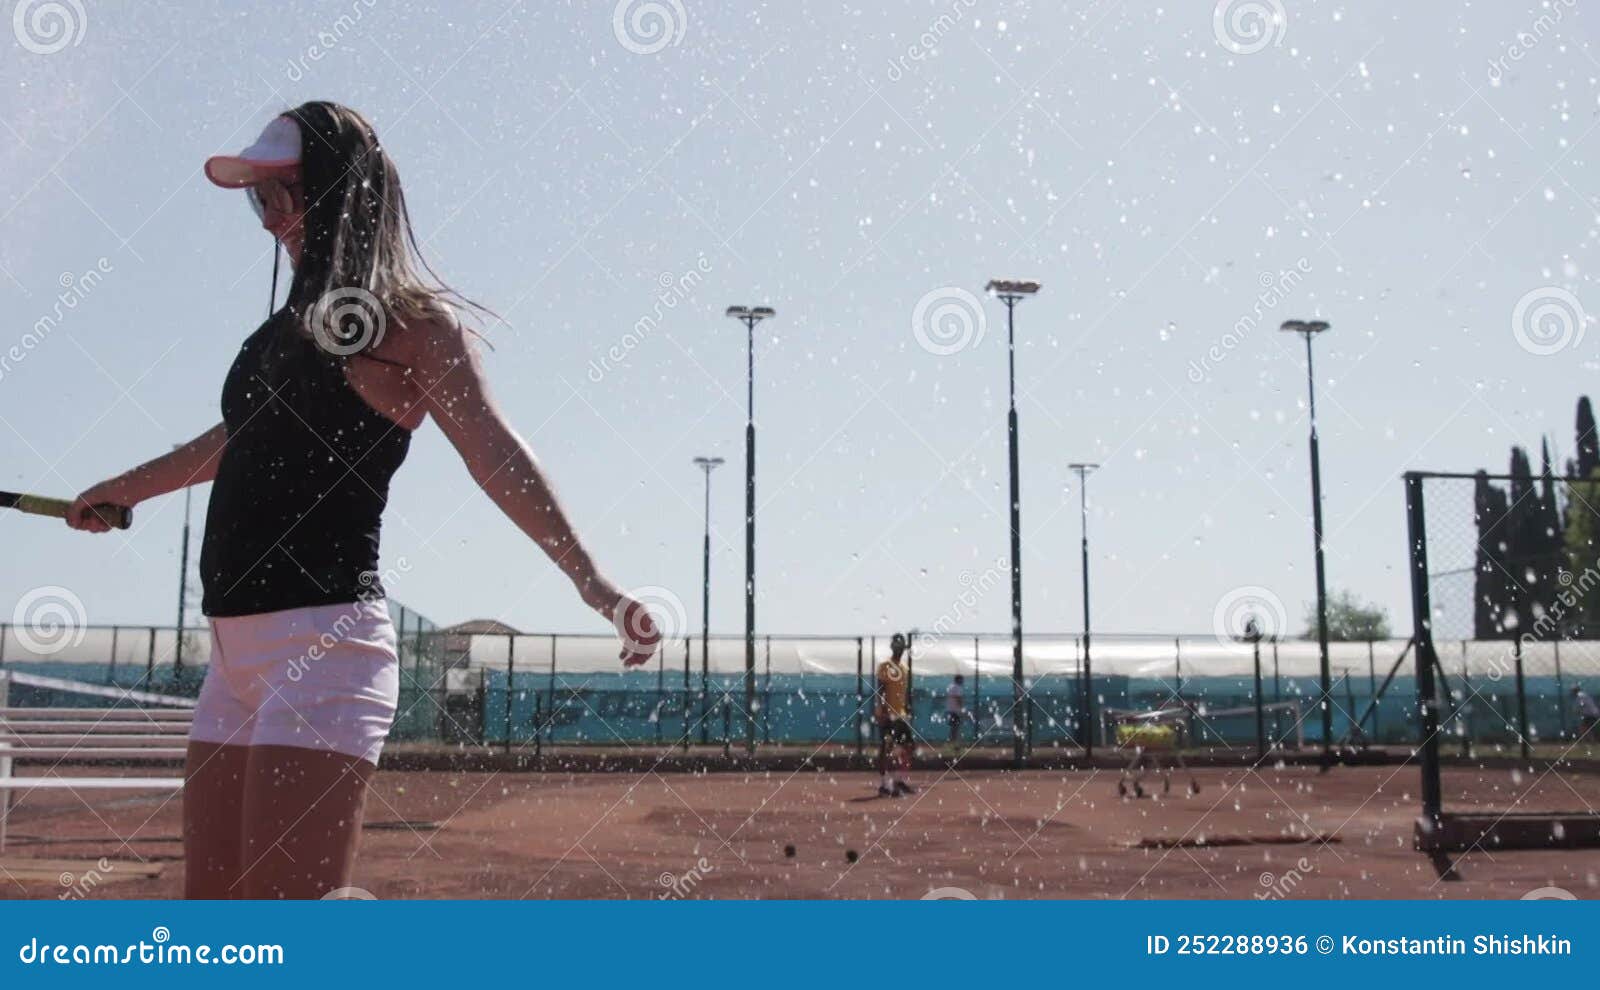 Turkey Antalya Women On Tennis Court Laugh Under Splashed